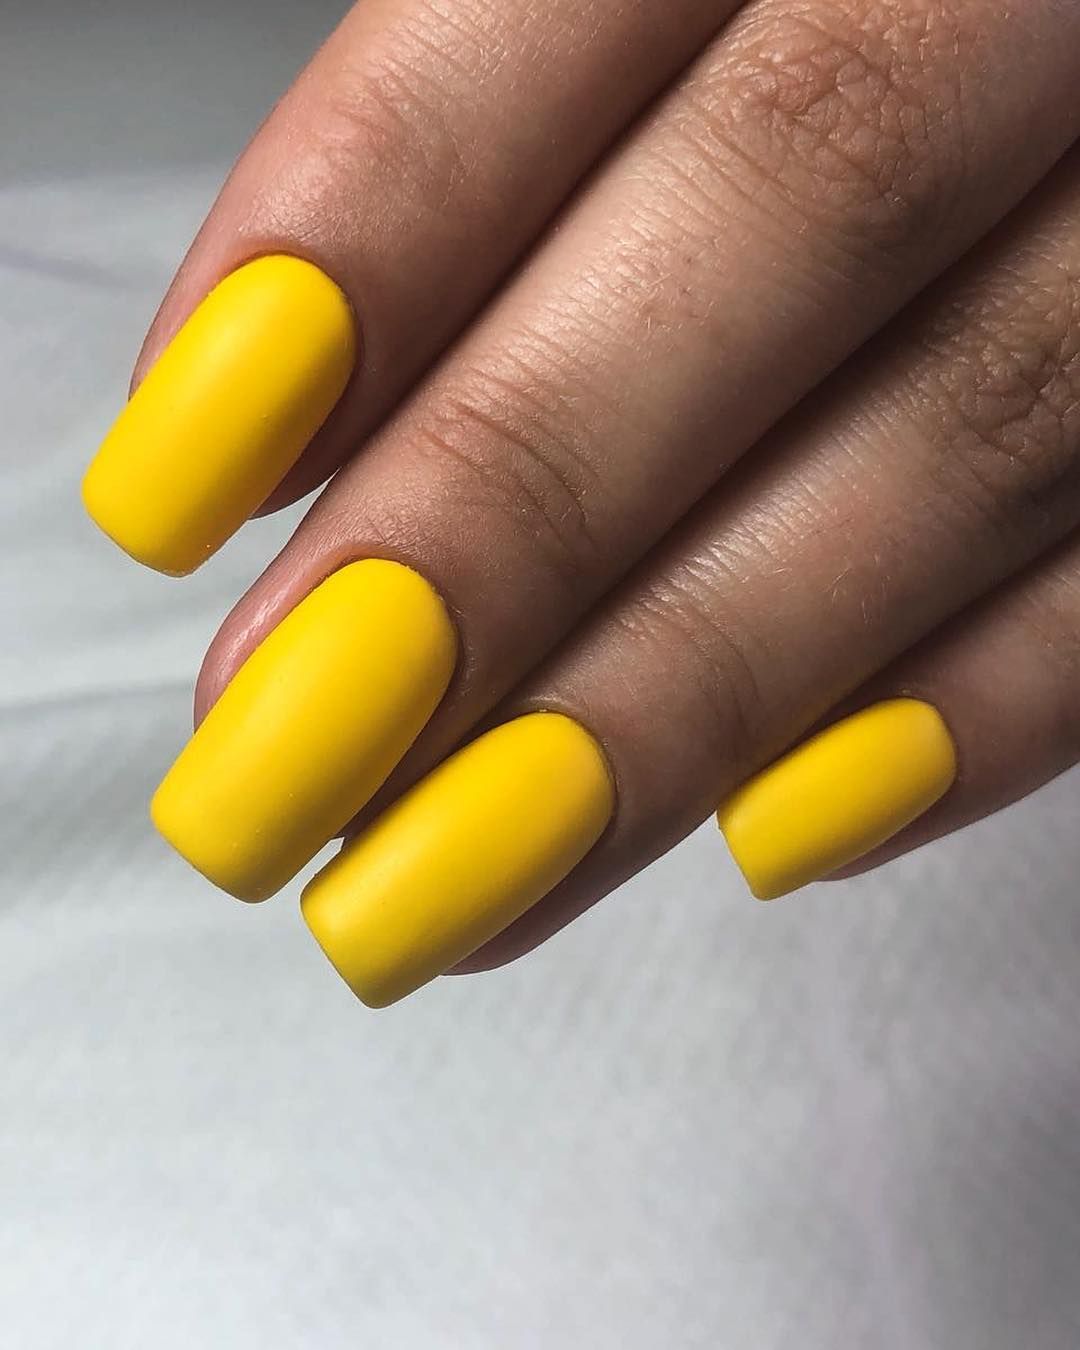 Маникюр в желтых тонах. Желтый маникюр. Жёлтые ногти маникюр. Маникюр с жёлтым цветом. Желтые матовые ногти.